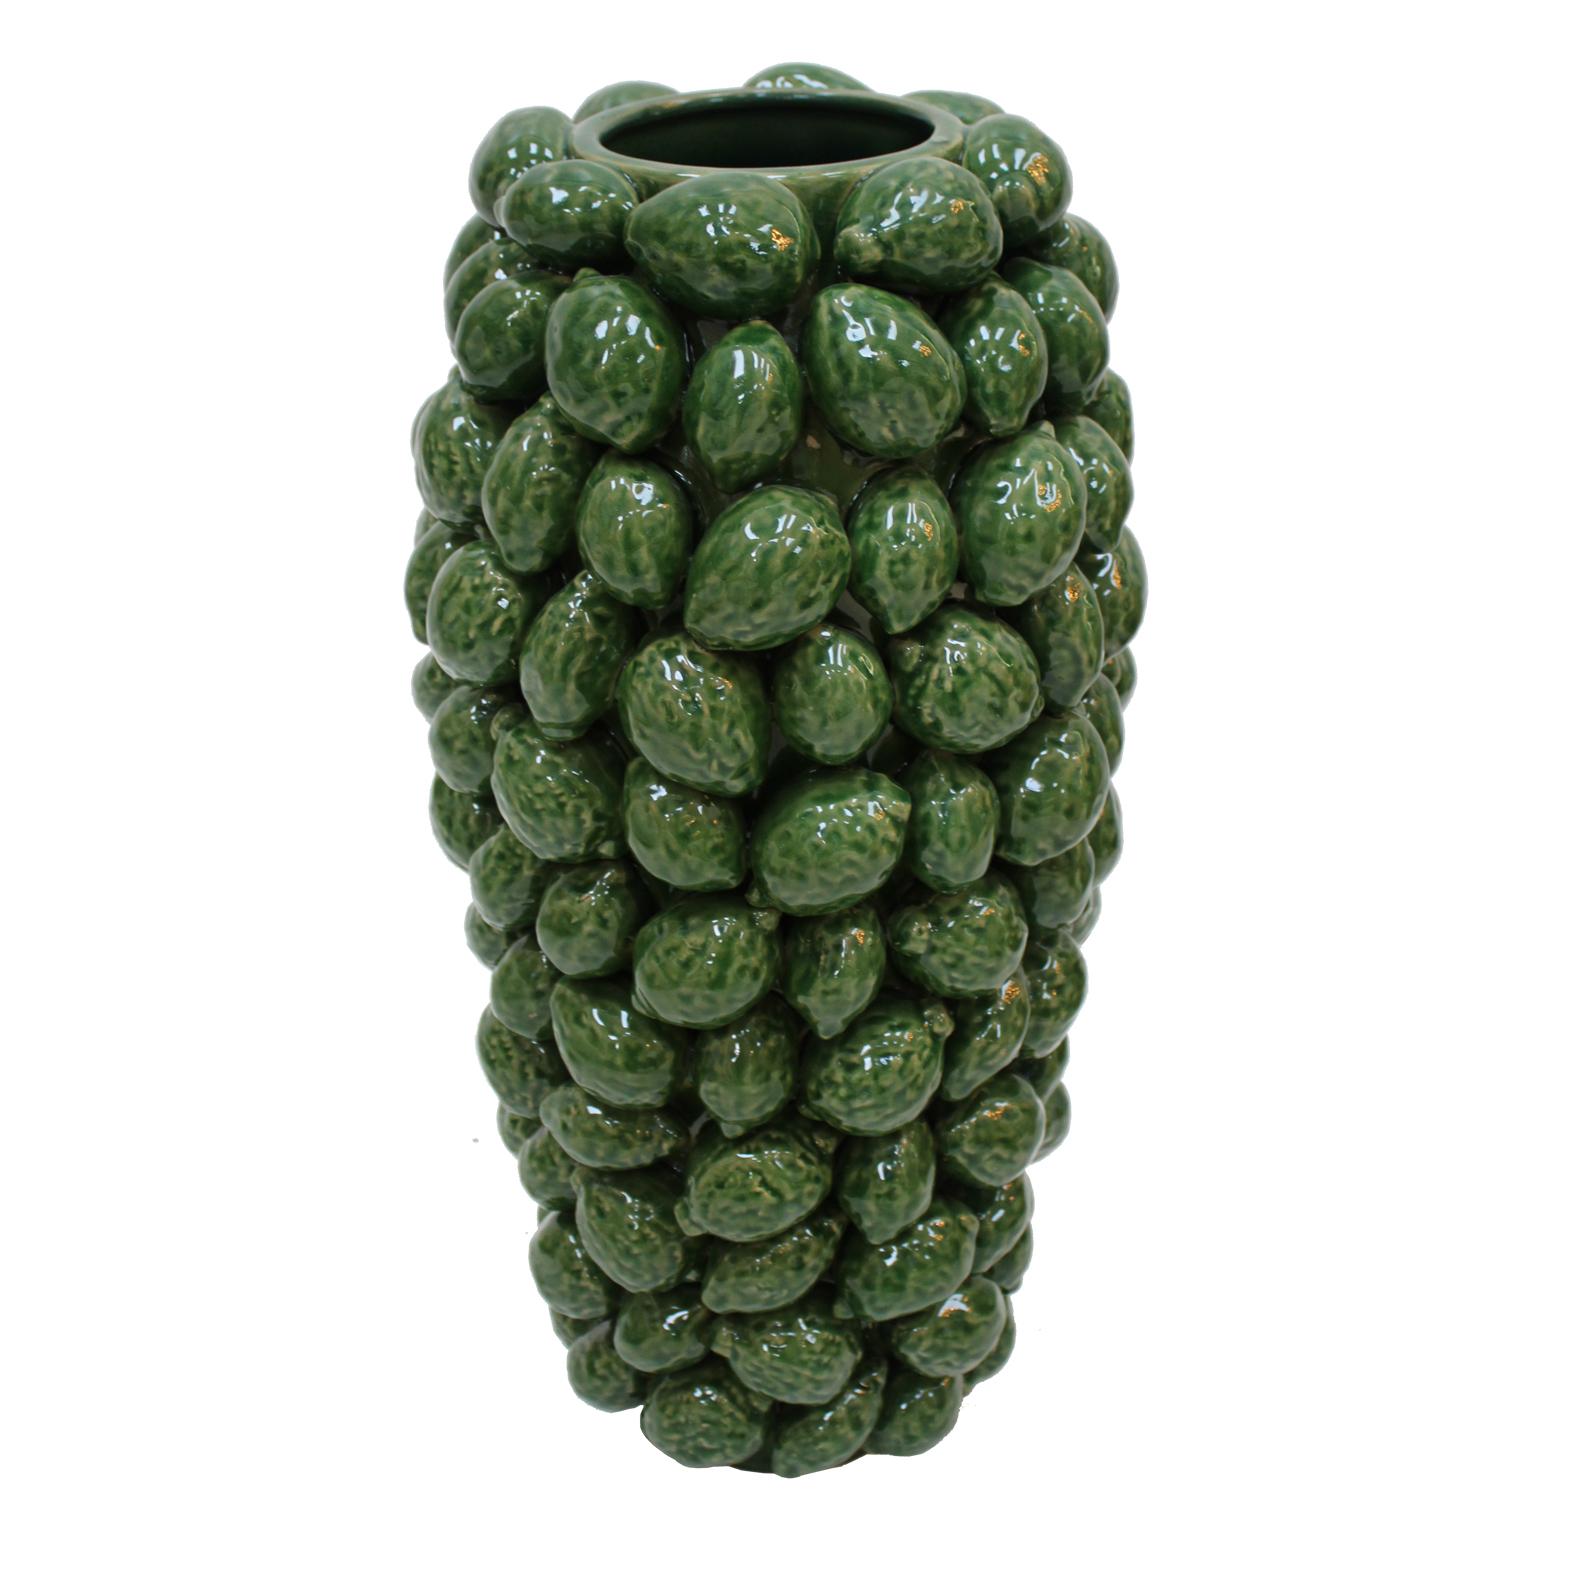 Vase fabriqué à la main en céramique verte émaillée avec des motifs de citrons traditionnels du sud de l'Italie.

Chaque article proposé par LA Studio est contrôlé par notre équipe de 10 artisans dans notre atelier interne. Des demandes spéciales de